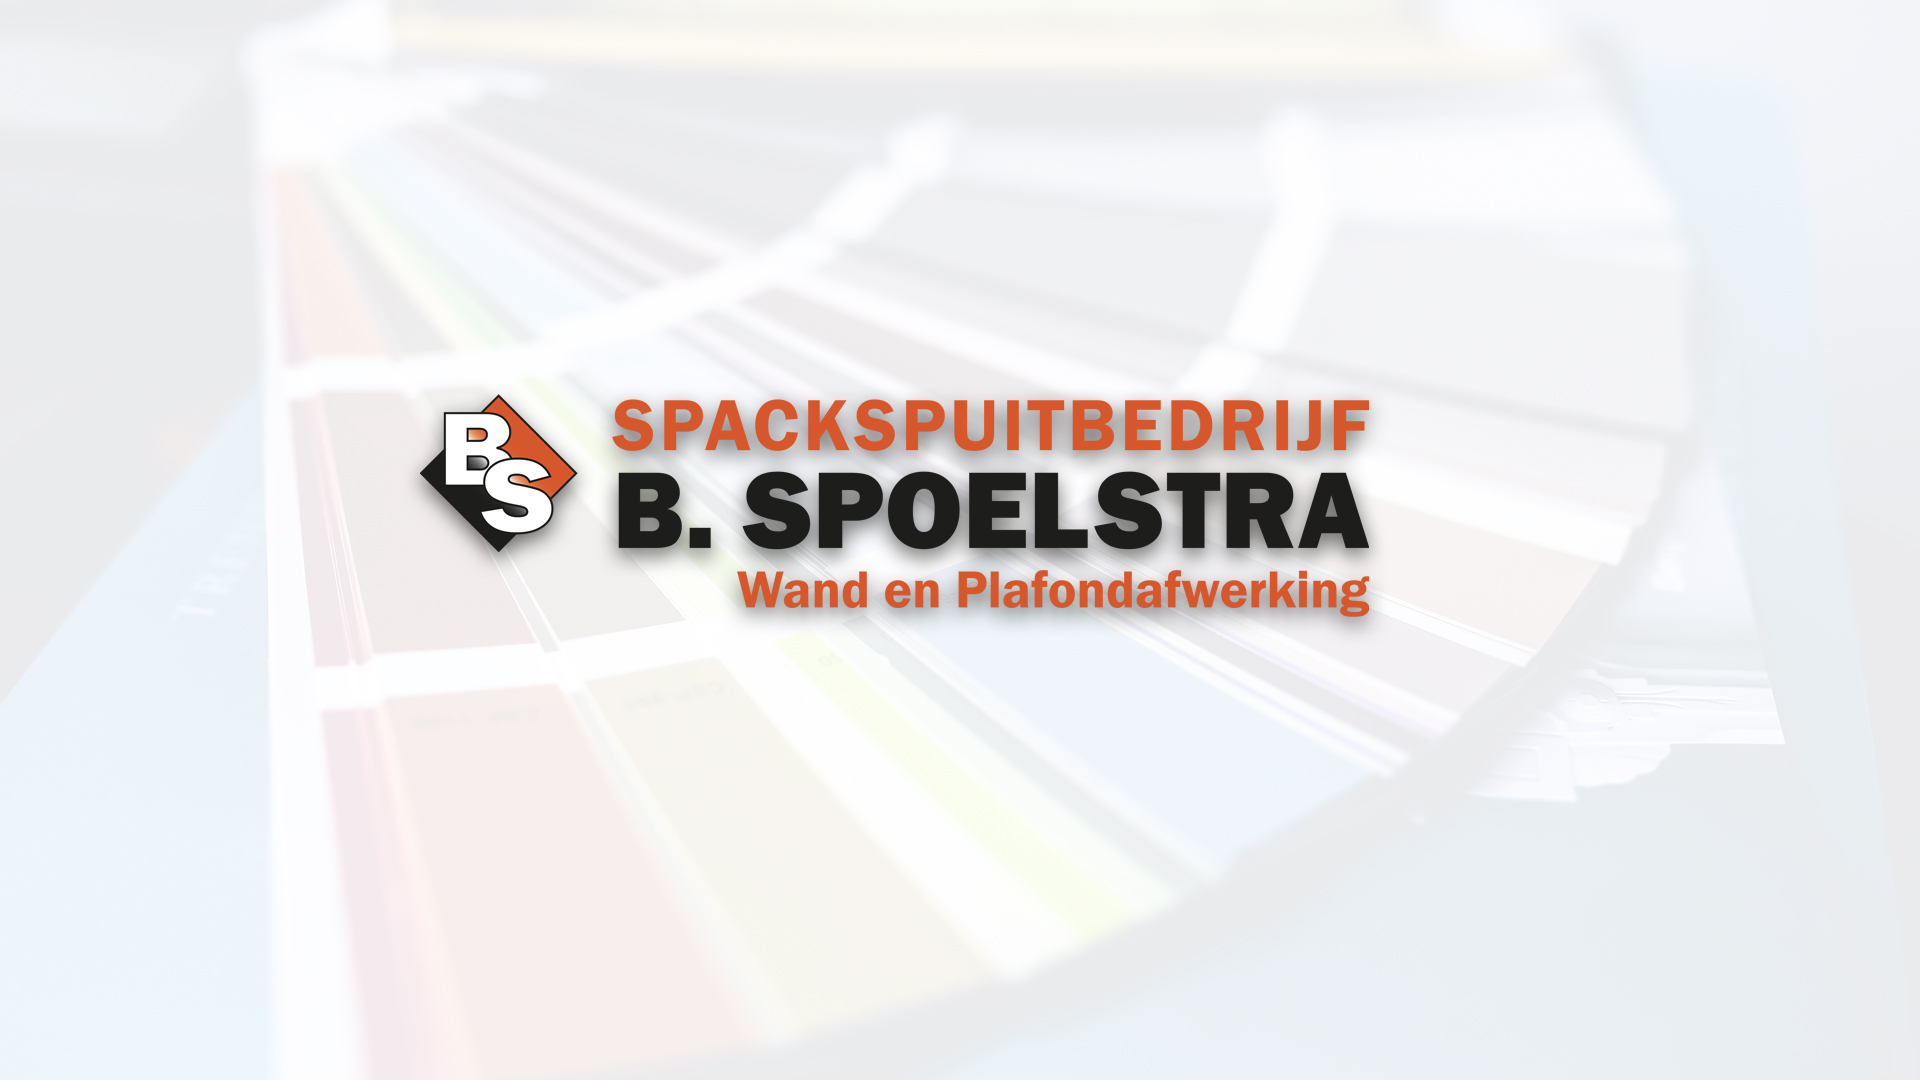 Spackspuitbedrijf B. Spoelstra